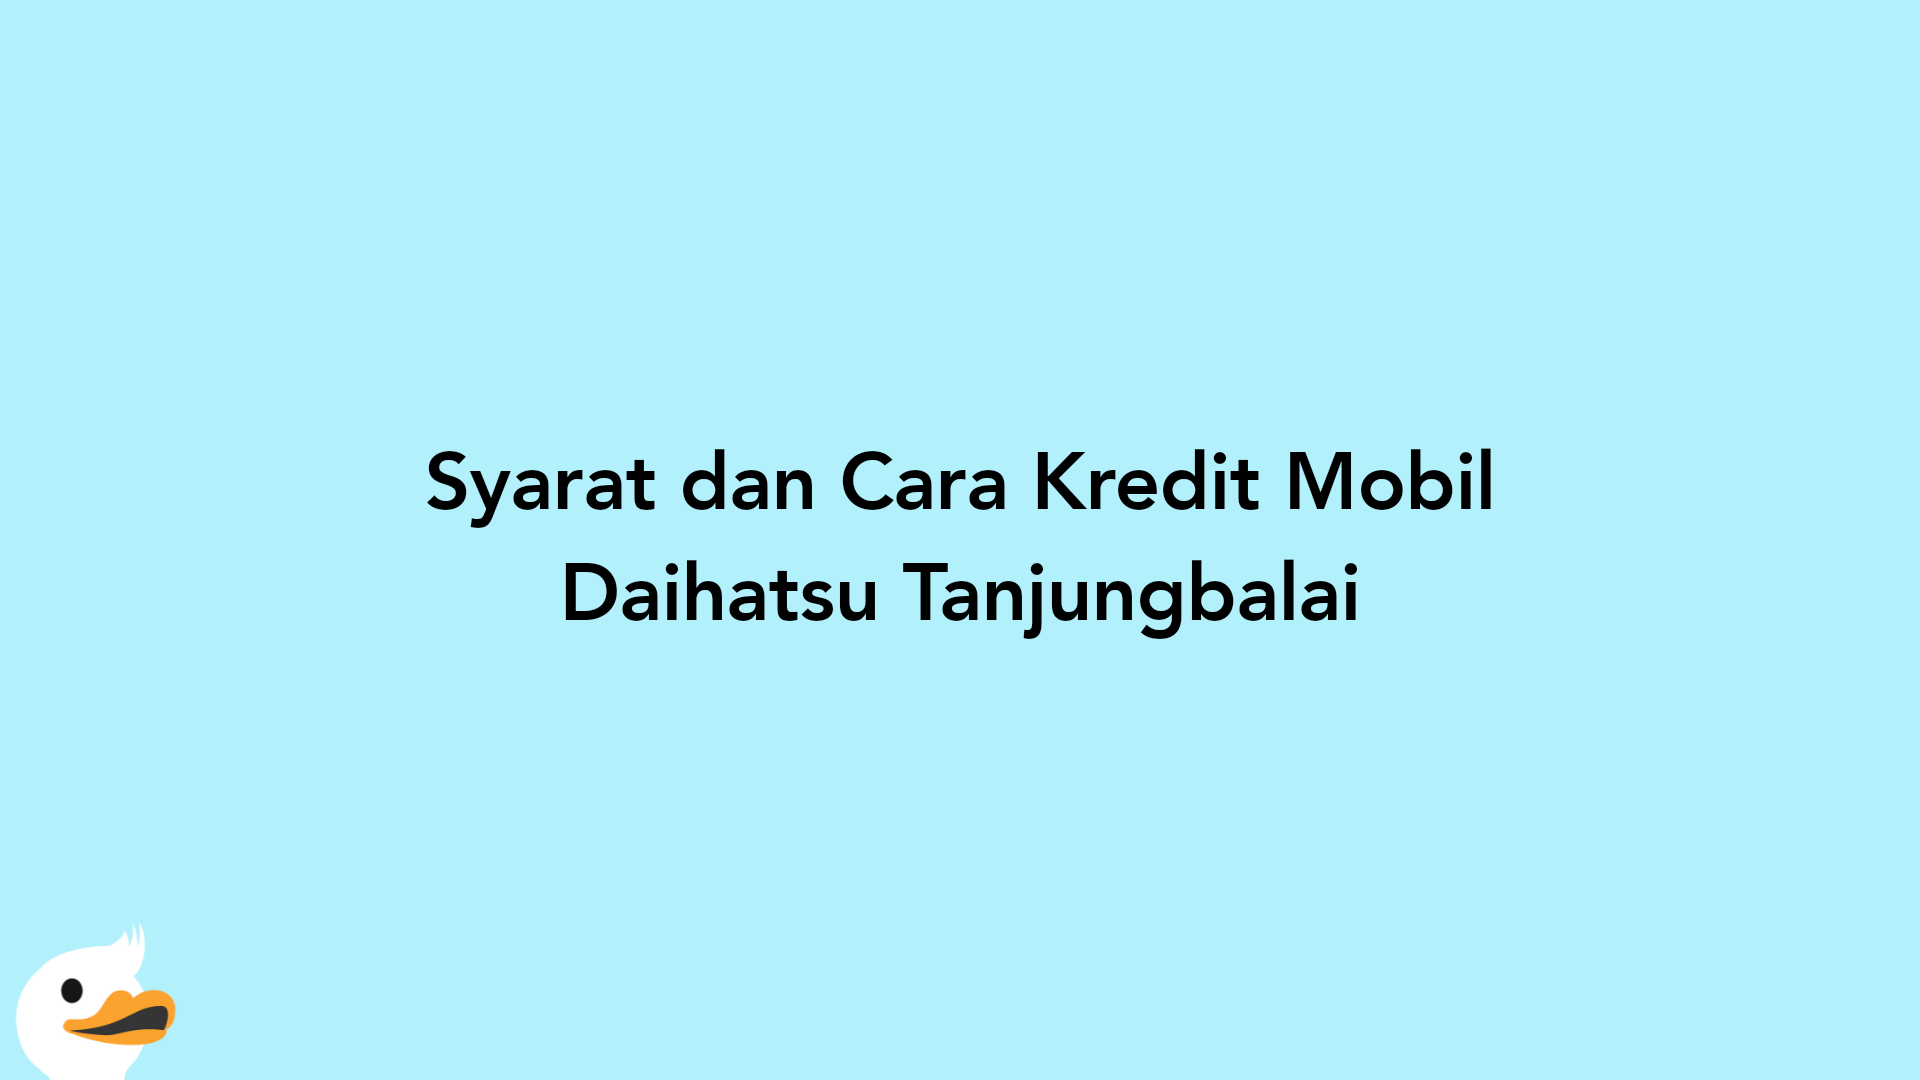 Syarat dan Cara Kredit Mobil Daihatsu Tanjungbalai